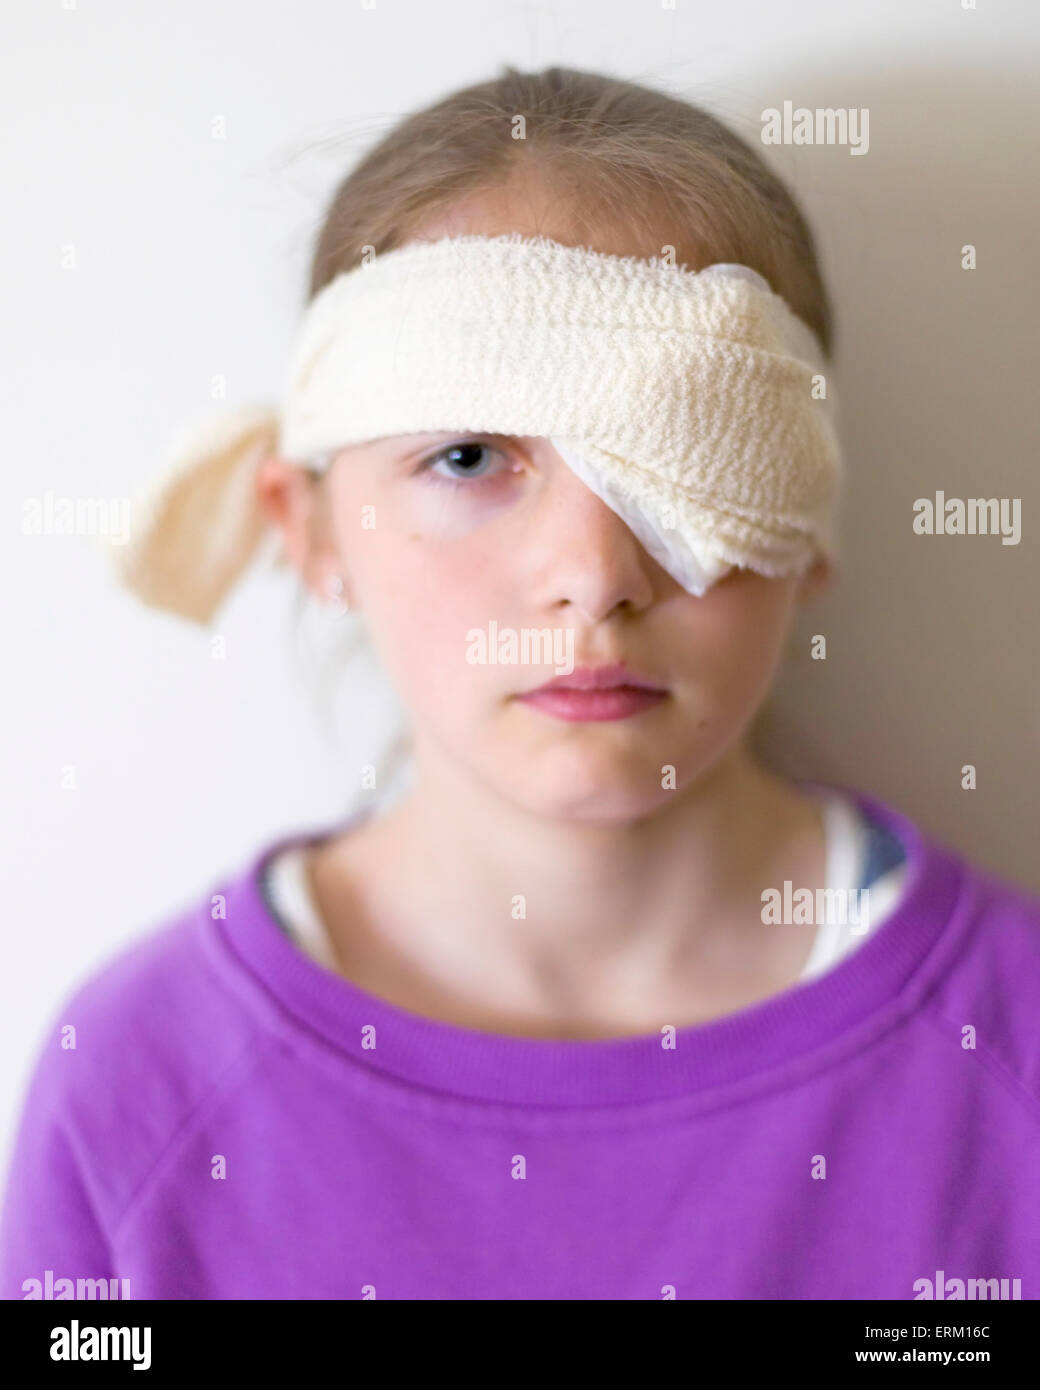 Bandage eye -Fotos und -Bildmaterial in hoher Auflösung – Alamy